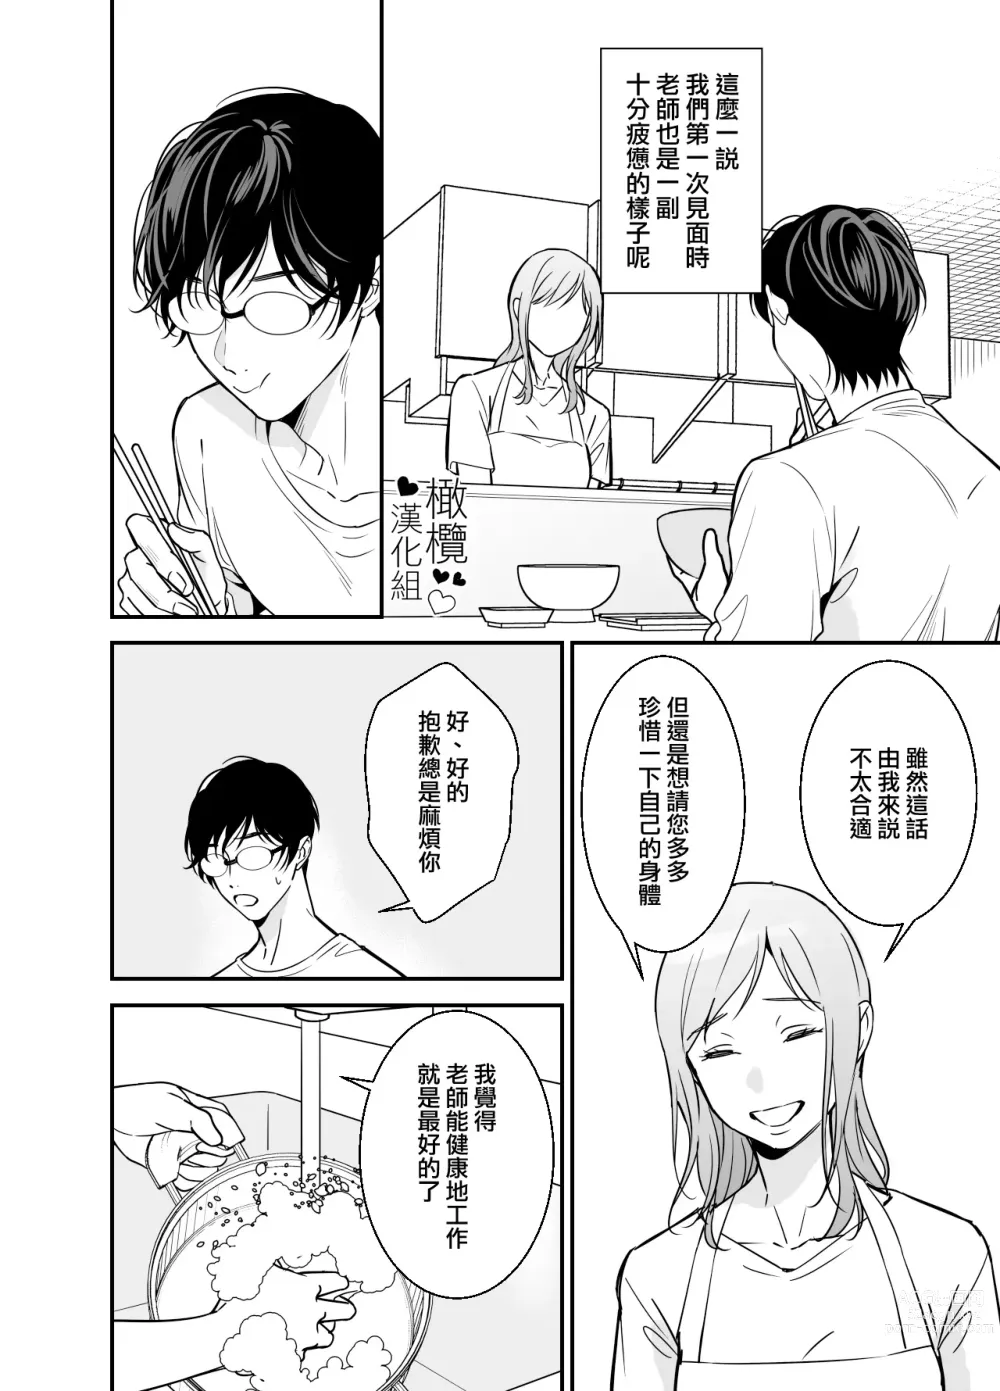 Page 9 of doujinshi 处男小说家和家政妇小姐